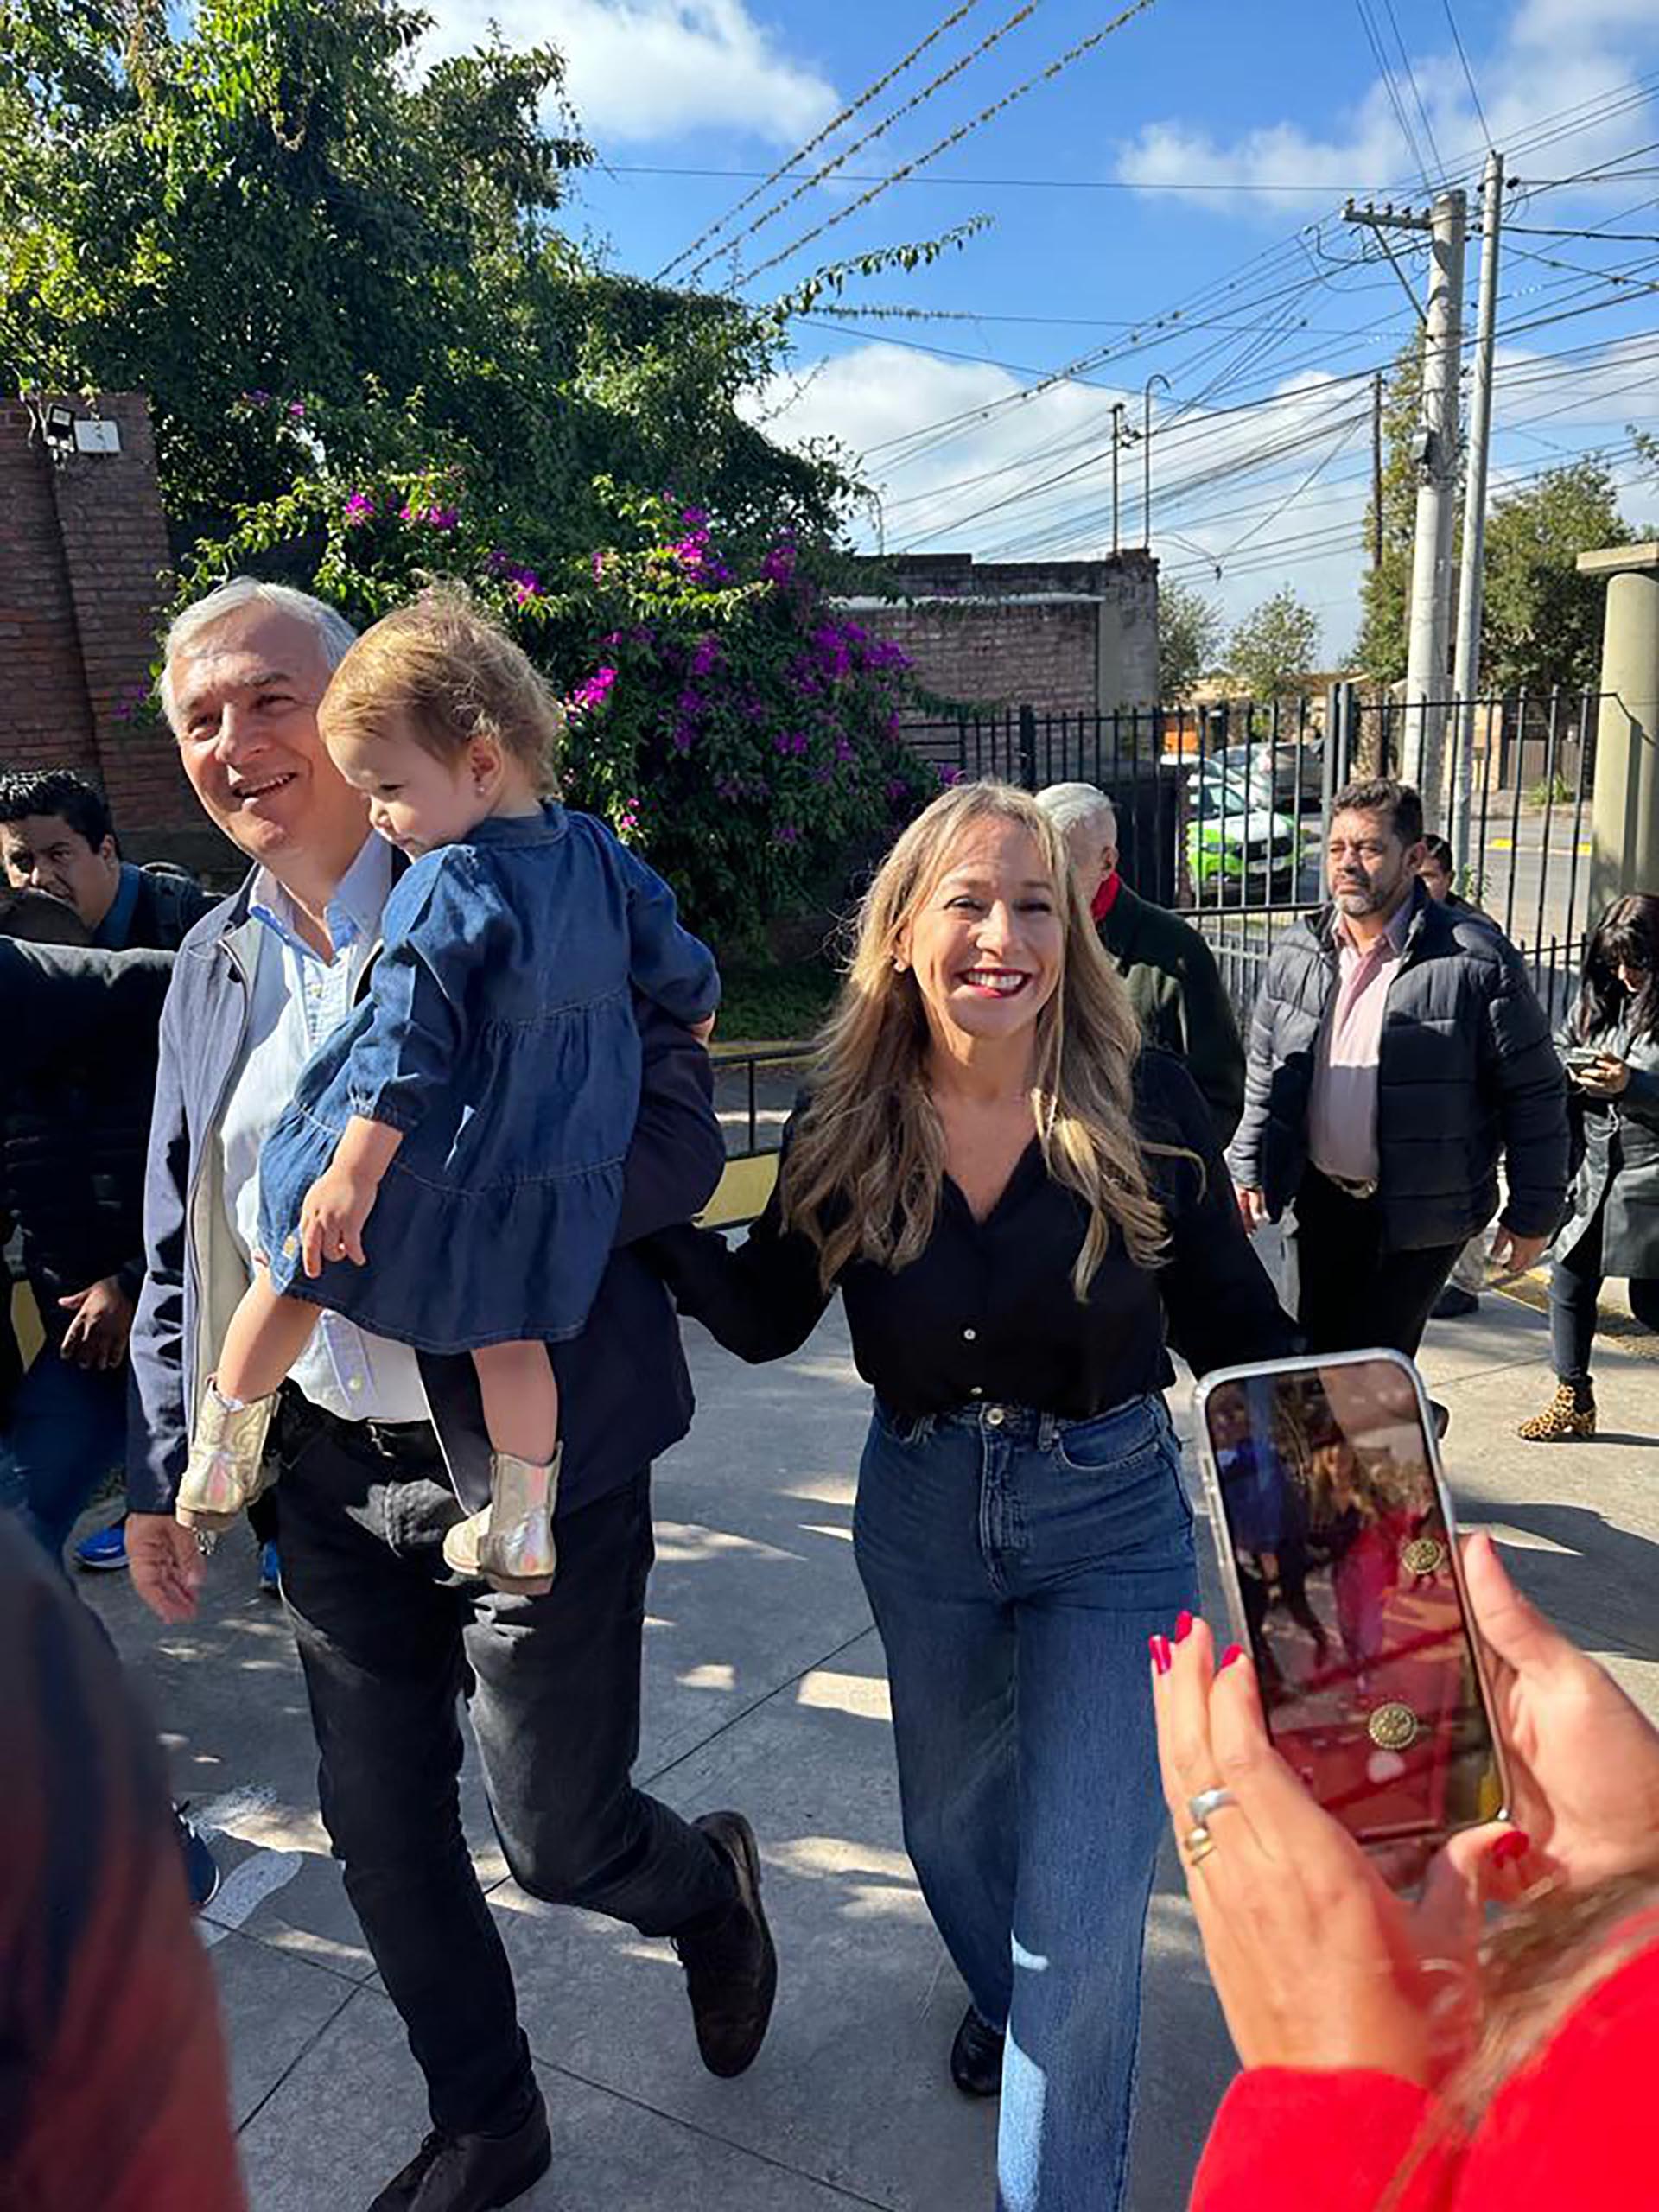 El gobernador de Jujuy, Gerardo Morales, fue a votar junto a su familia